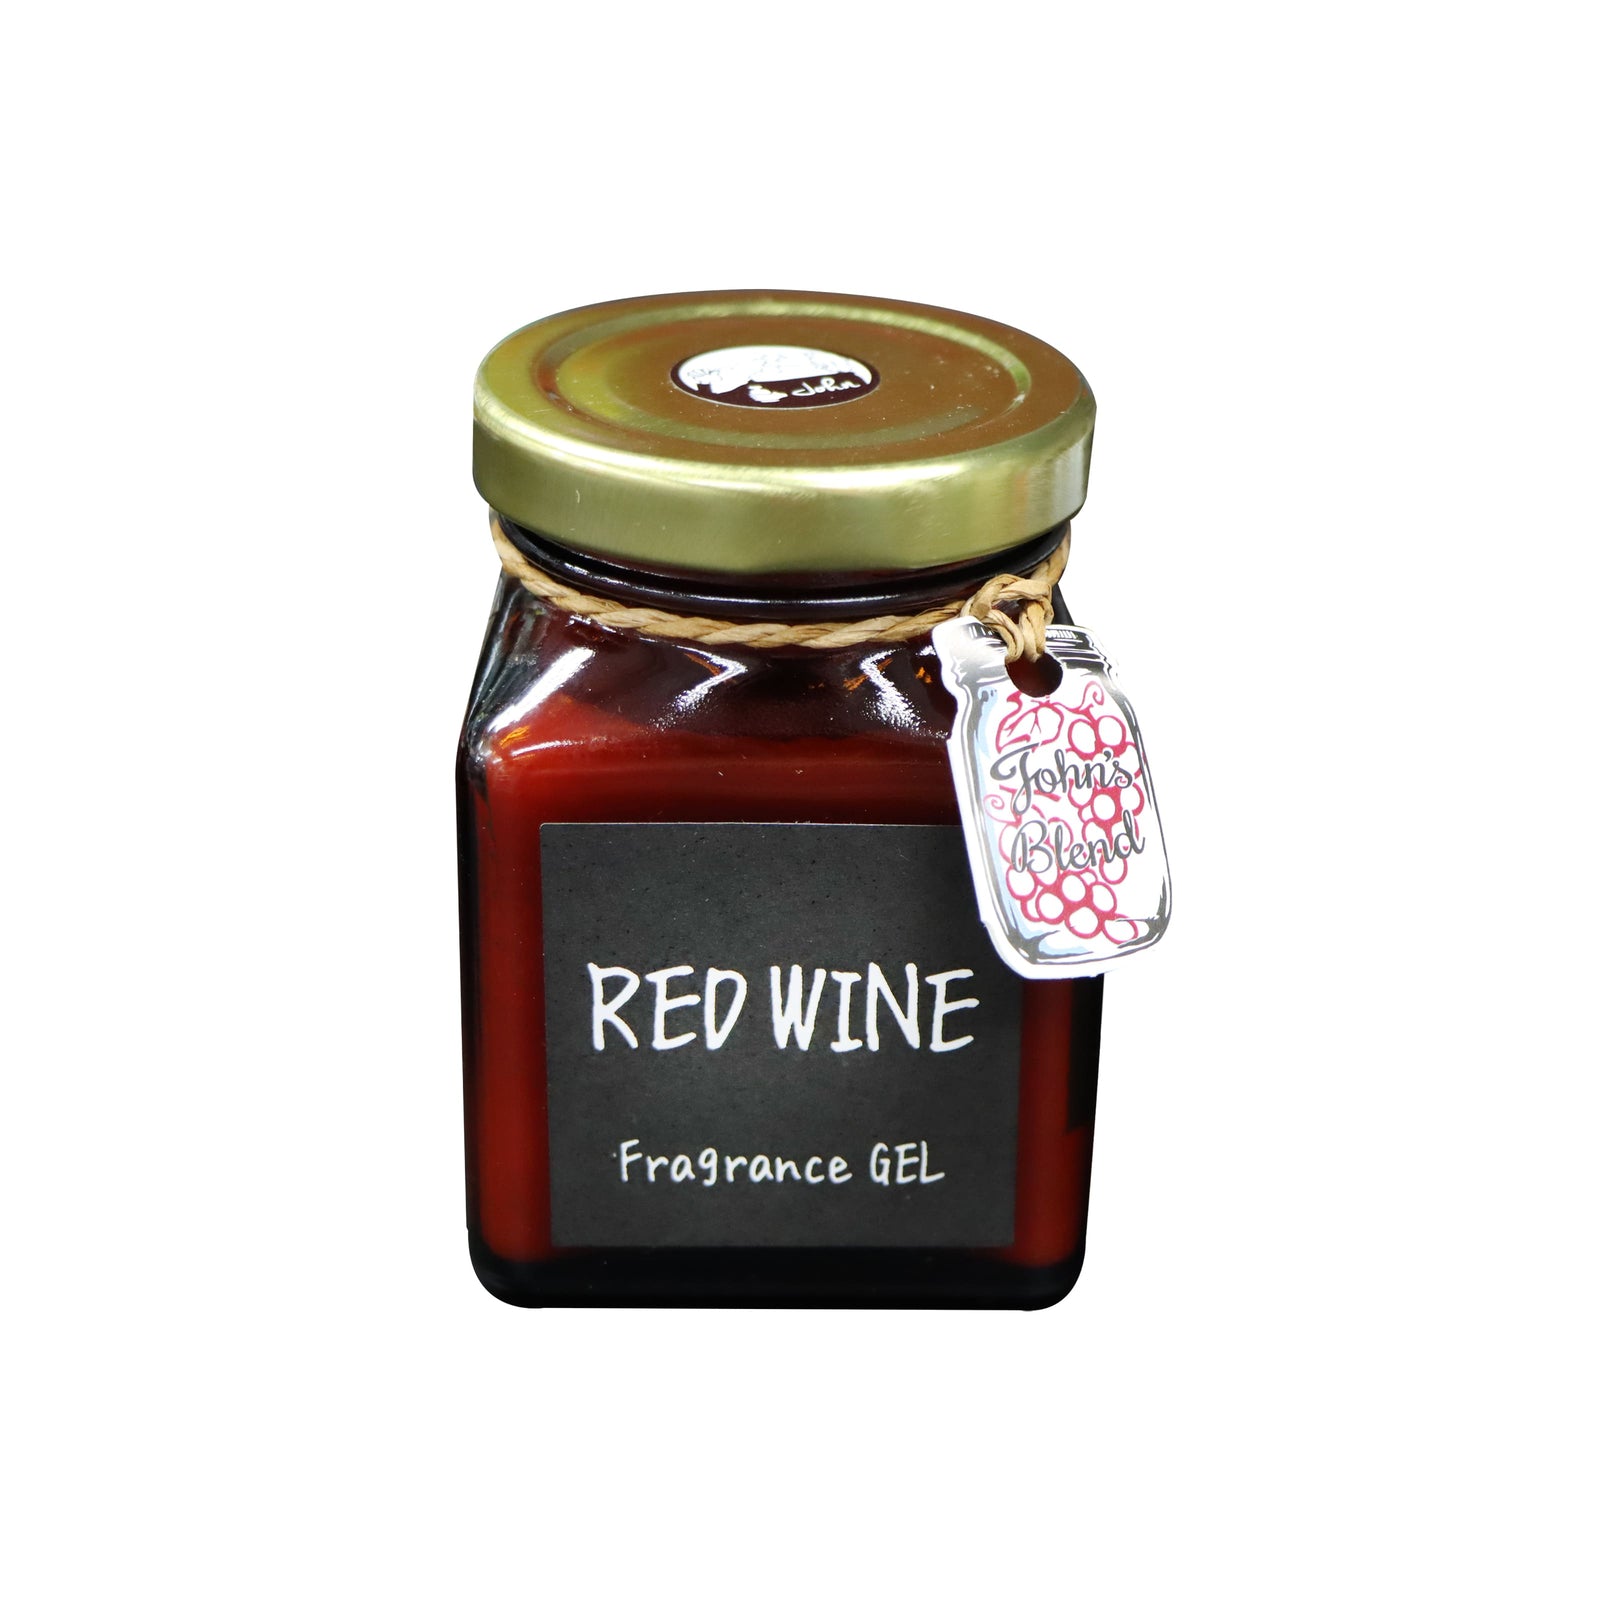 John's Blend Fragrance Gel Red Wine 135g